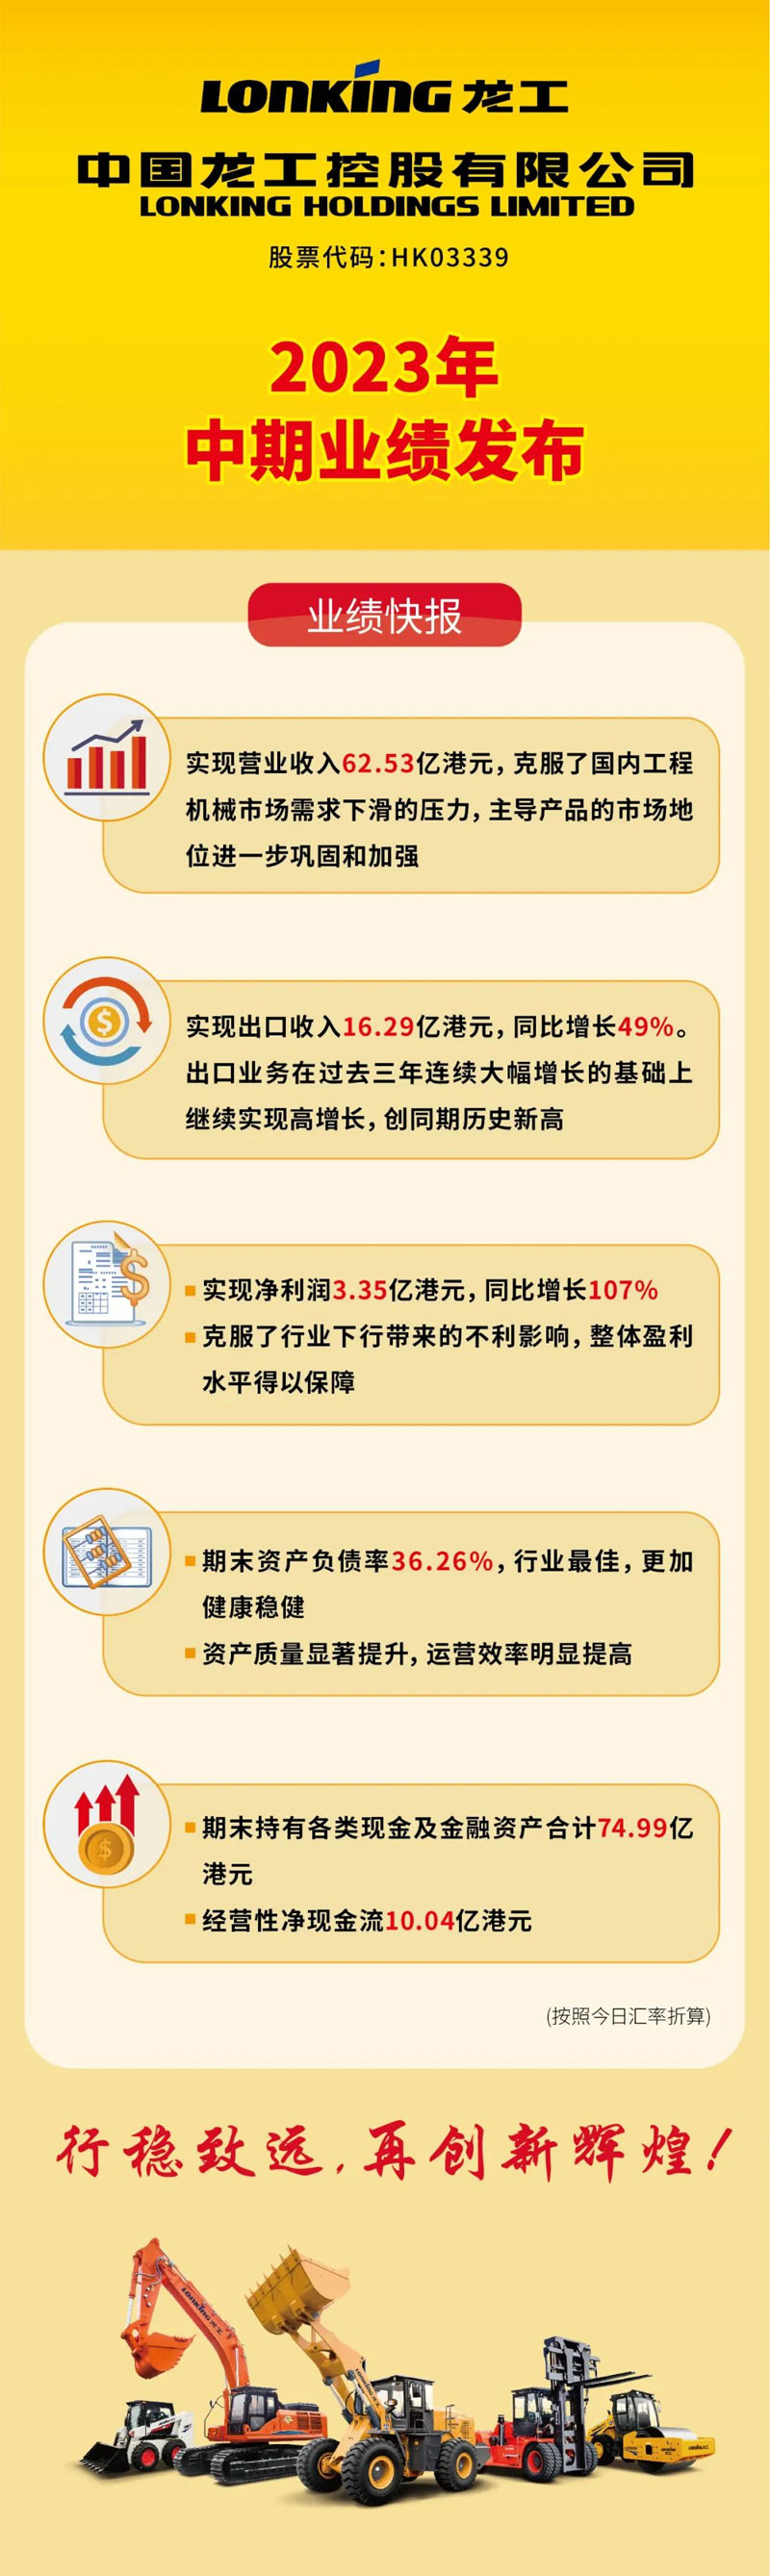 中国龙工2023年中期业绩发布